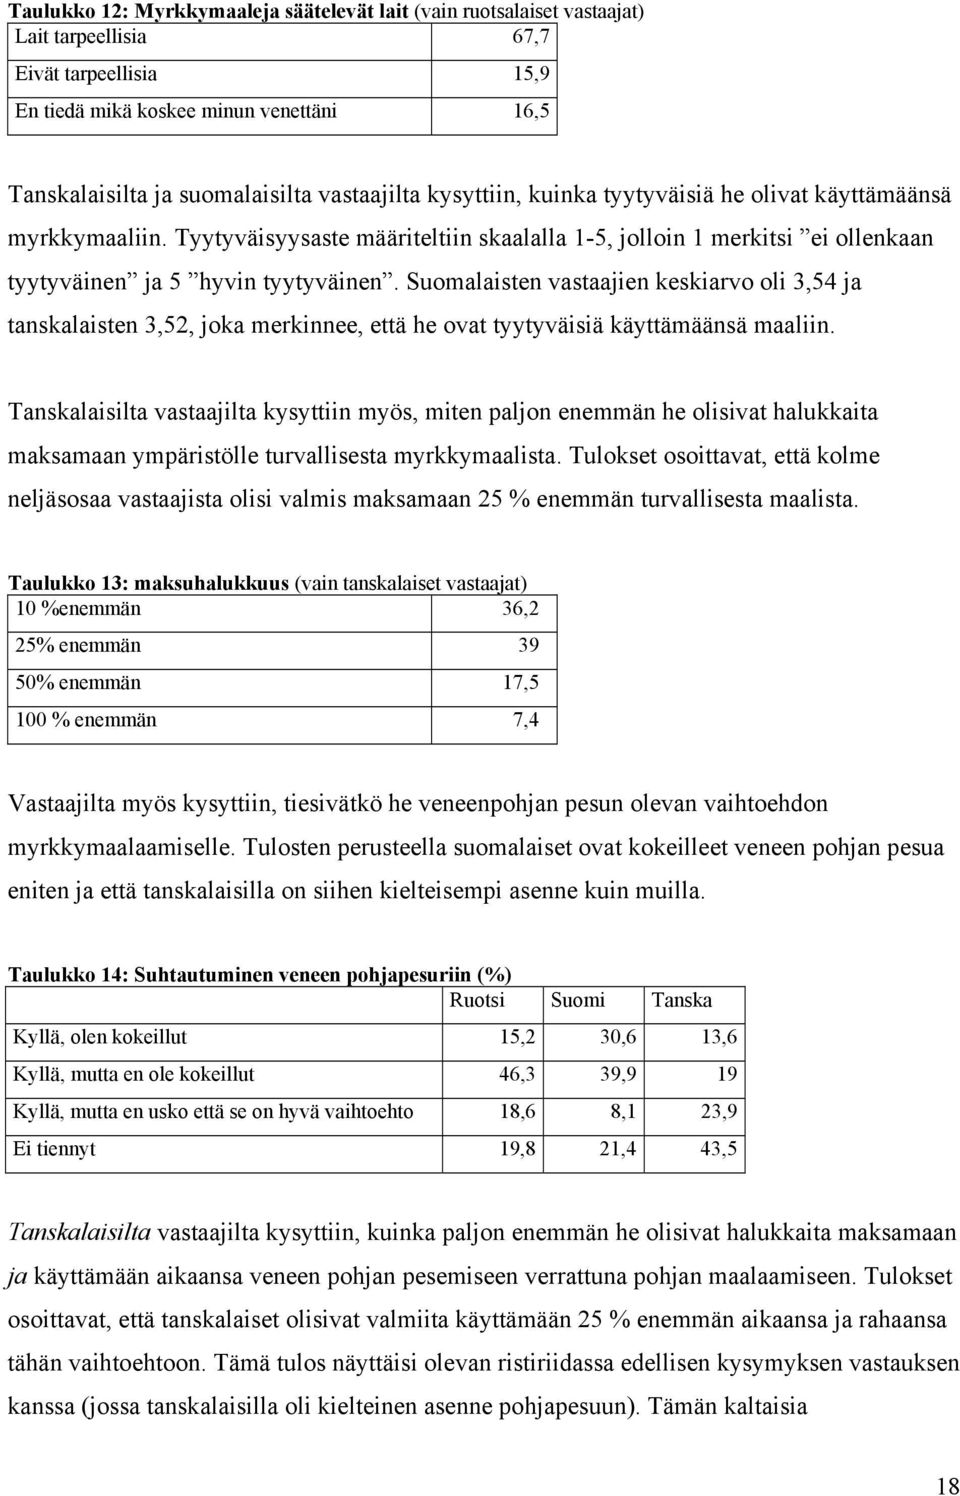 Suomalaisten vastaajien keskiarvo oli 3,54 ja tanskalaisten 3,52, joka merkinnee, että he ovat tyytyväisiä käyttämäänsä maaliin.